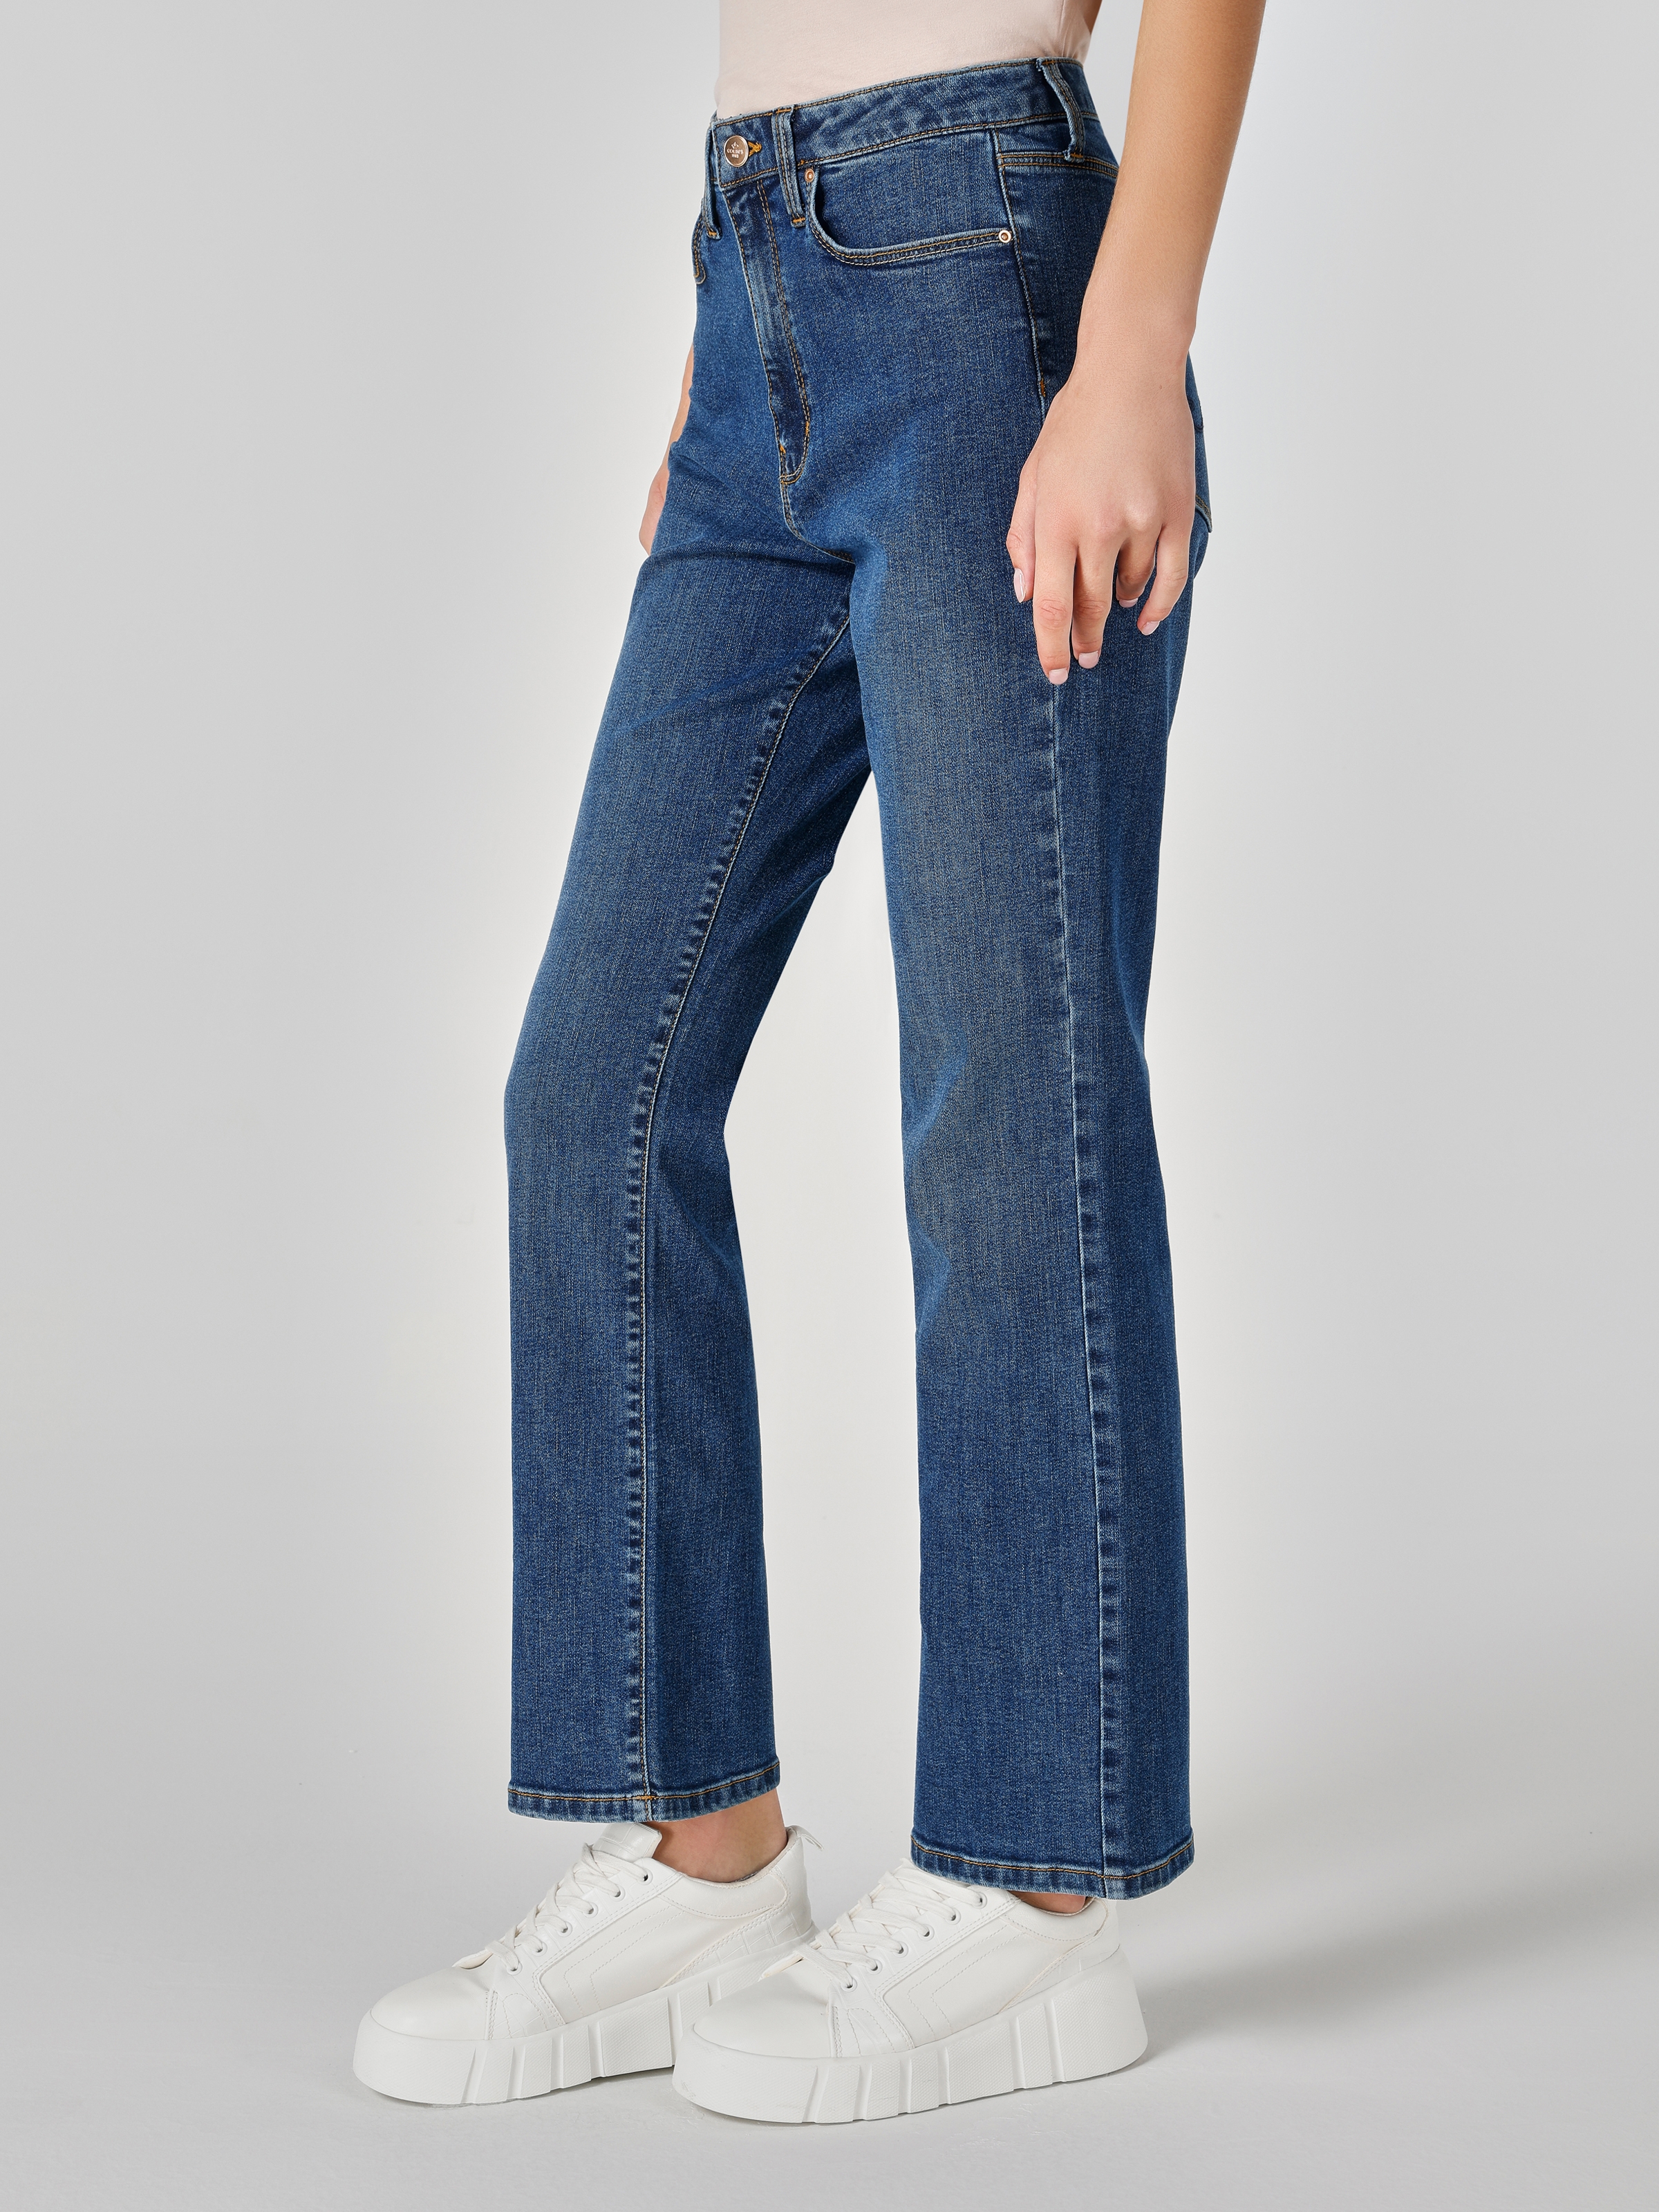 Afficher les détails de 792 Mıla Taille Moyenne Jambe Droite Coupe Régulière Bleu Pantalon En Jean Femme